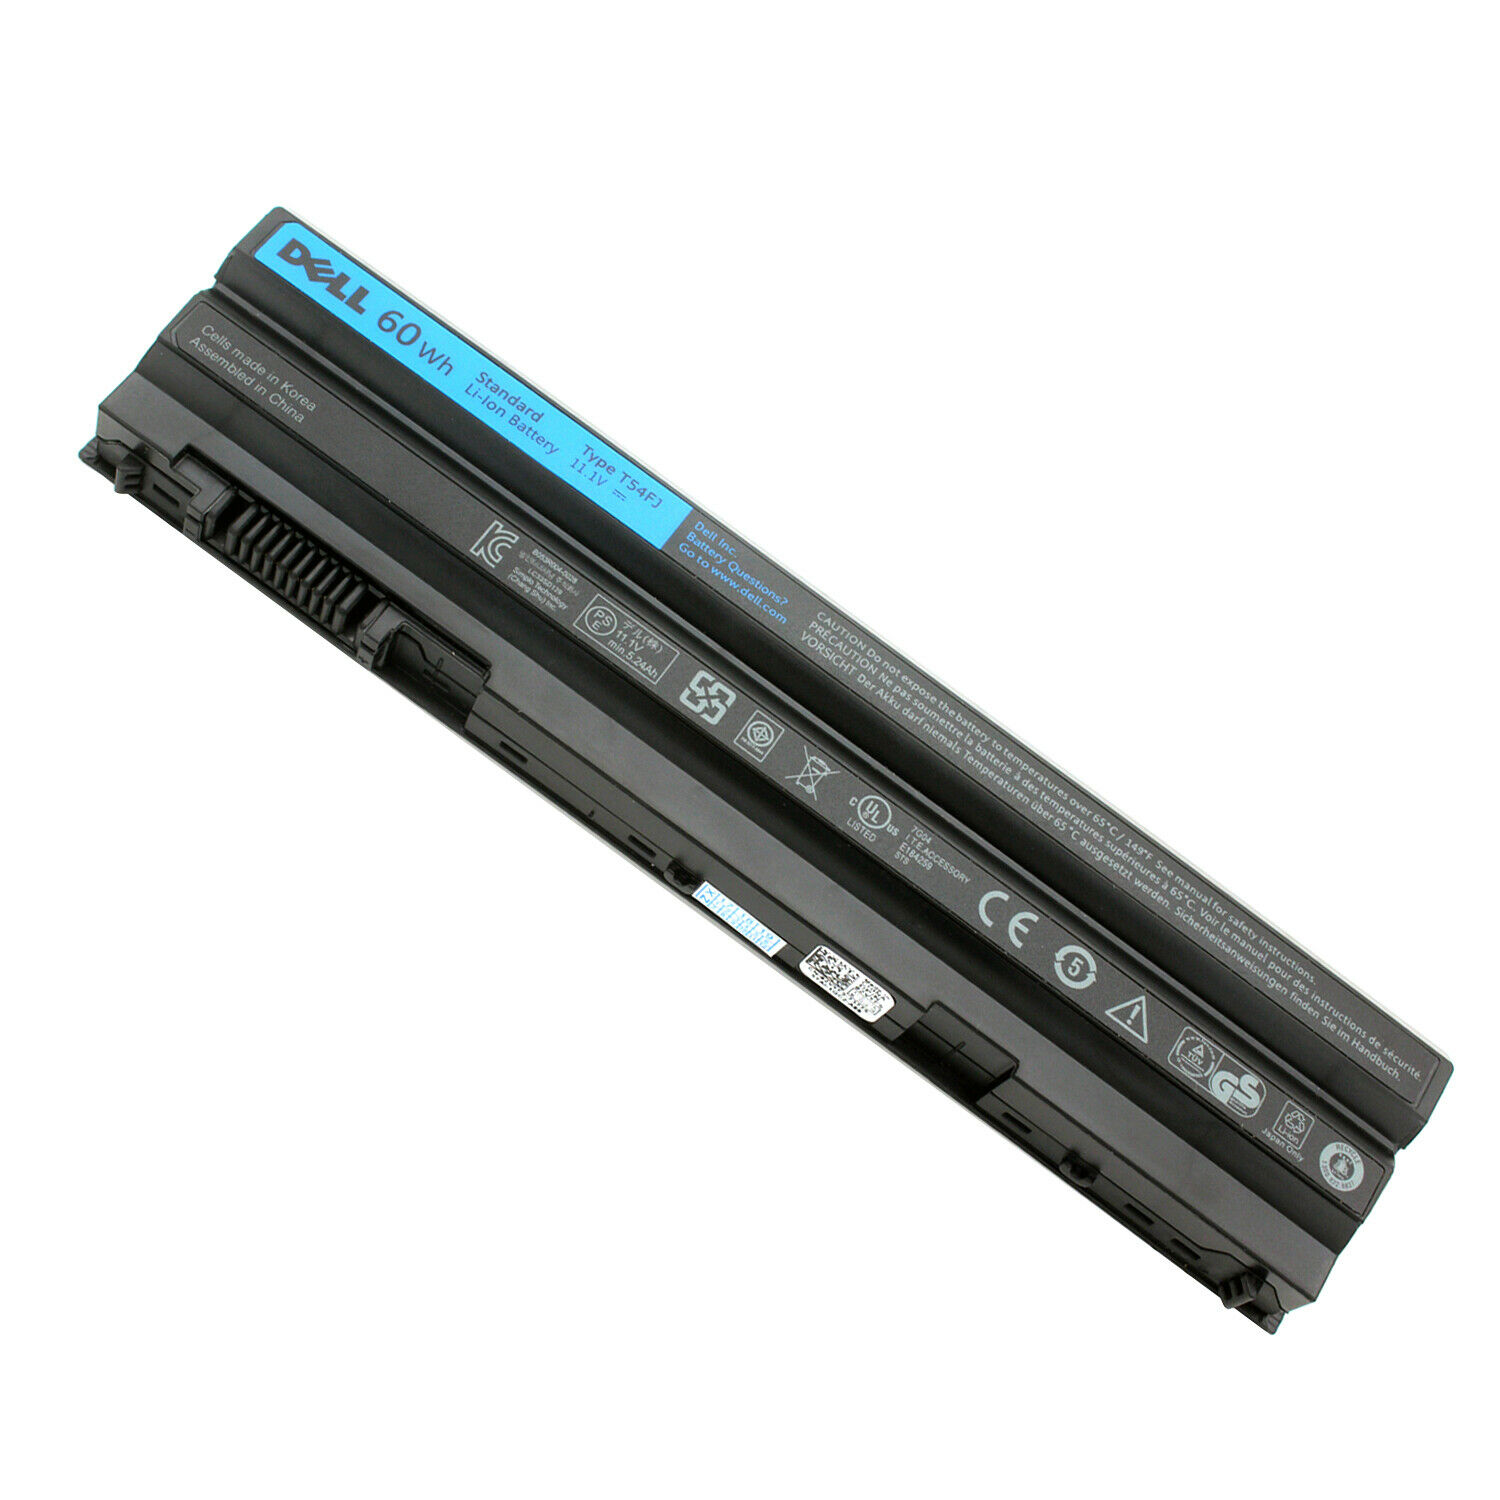 97WH Battery 71R31 for Dell Latitude E6420 E6540 E6440 Precision M2800